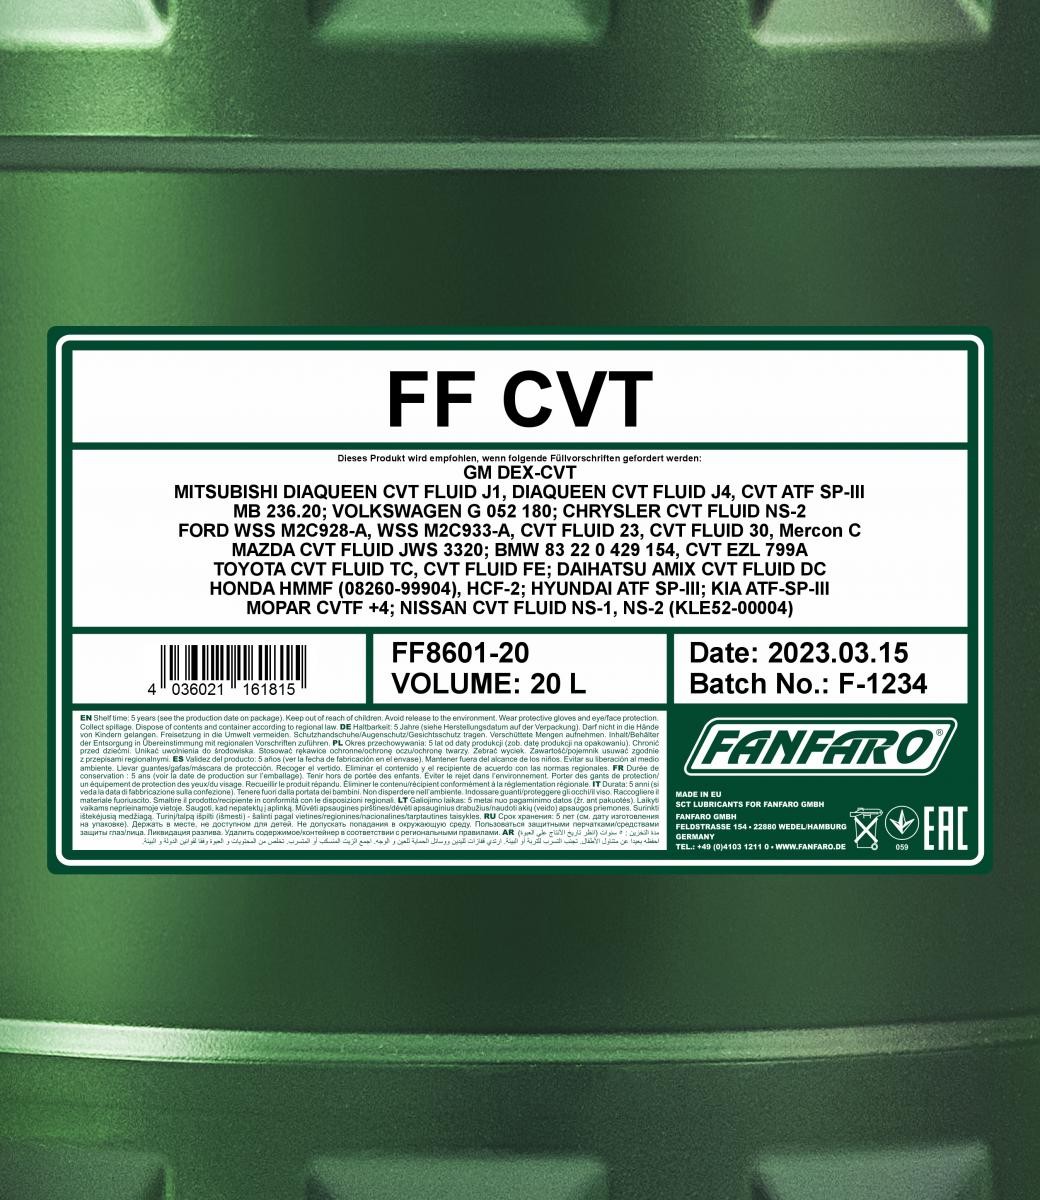 FANFARO Automatic transmission fluid FF8601-20